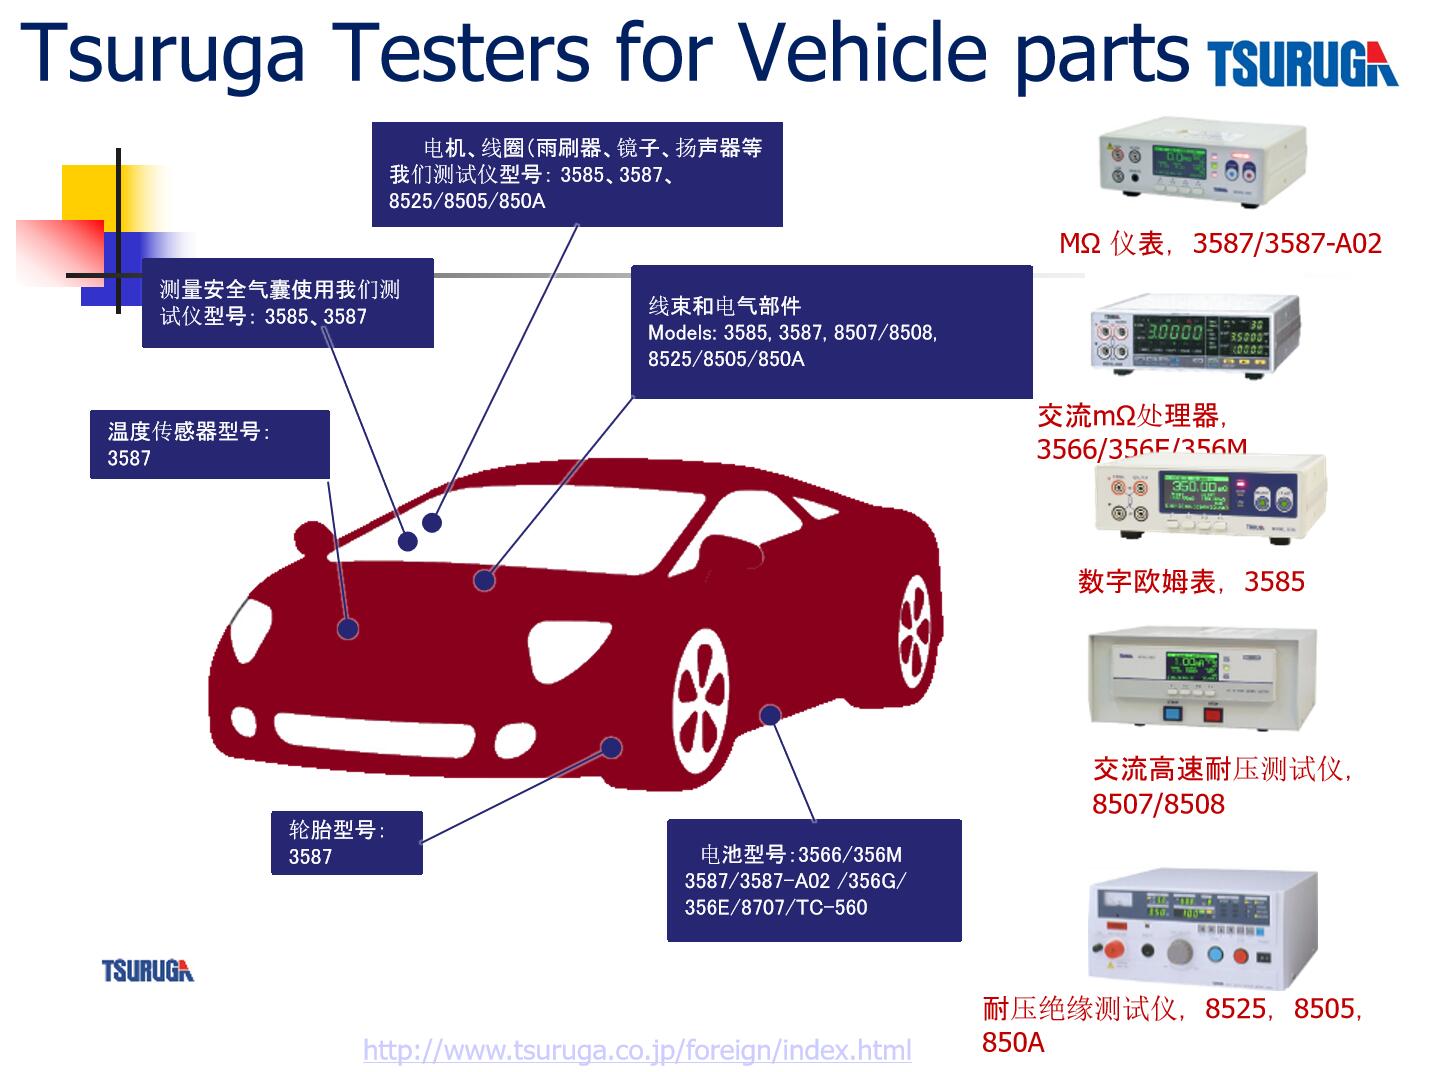 tsuruga品牌測試儀可用于電機,線圈,雨刮器,安全氣囊,溫度傳感器,輪胎,線束和電氣部件,可以測量鋰電池的電流電壓電阻值